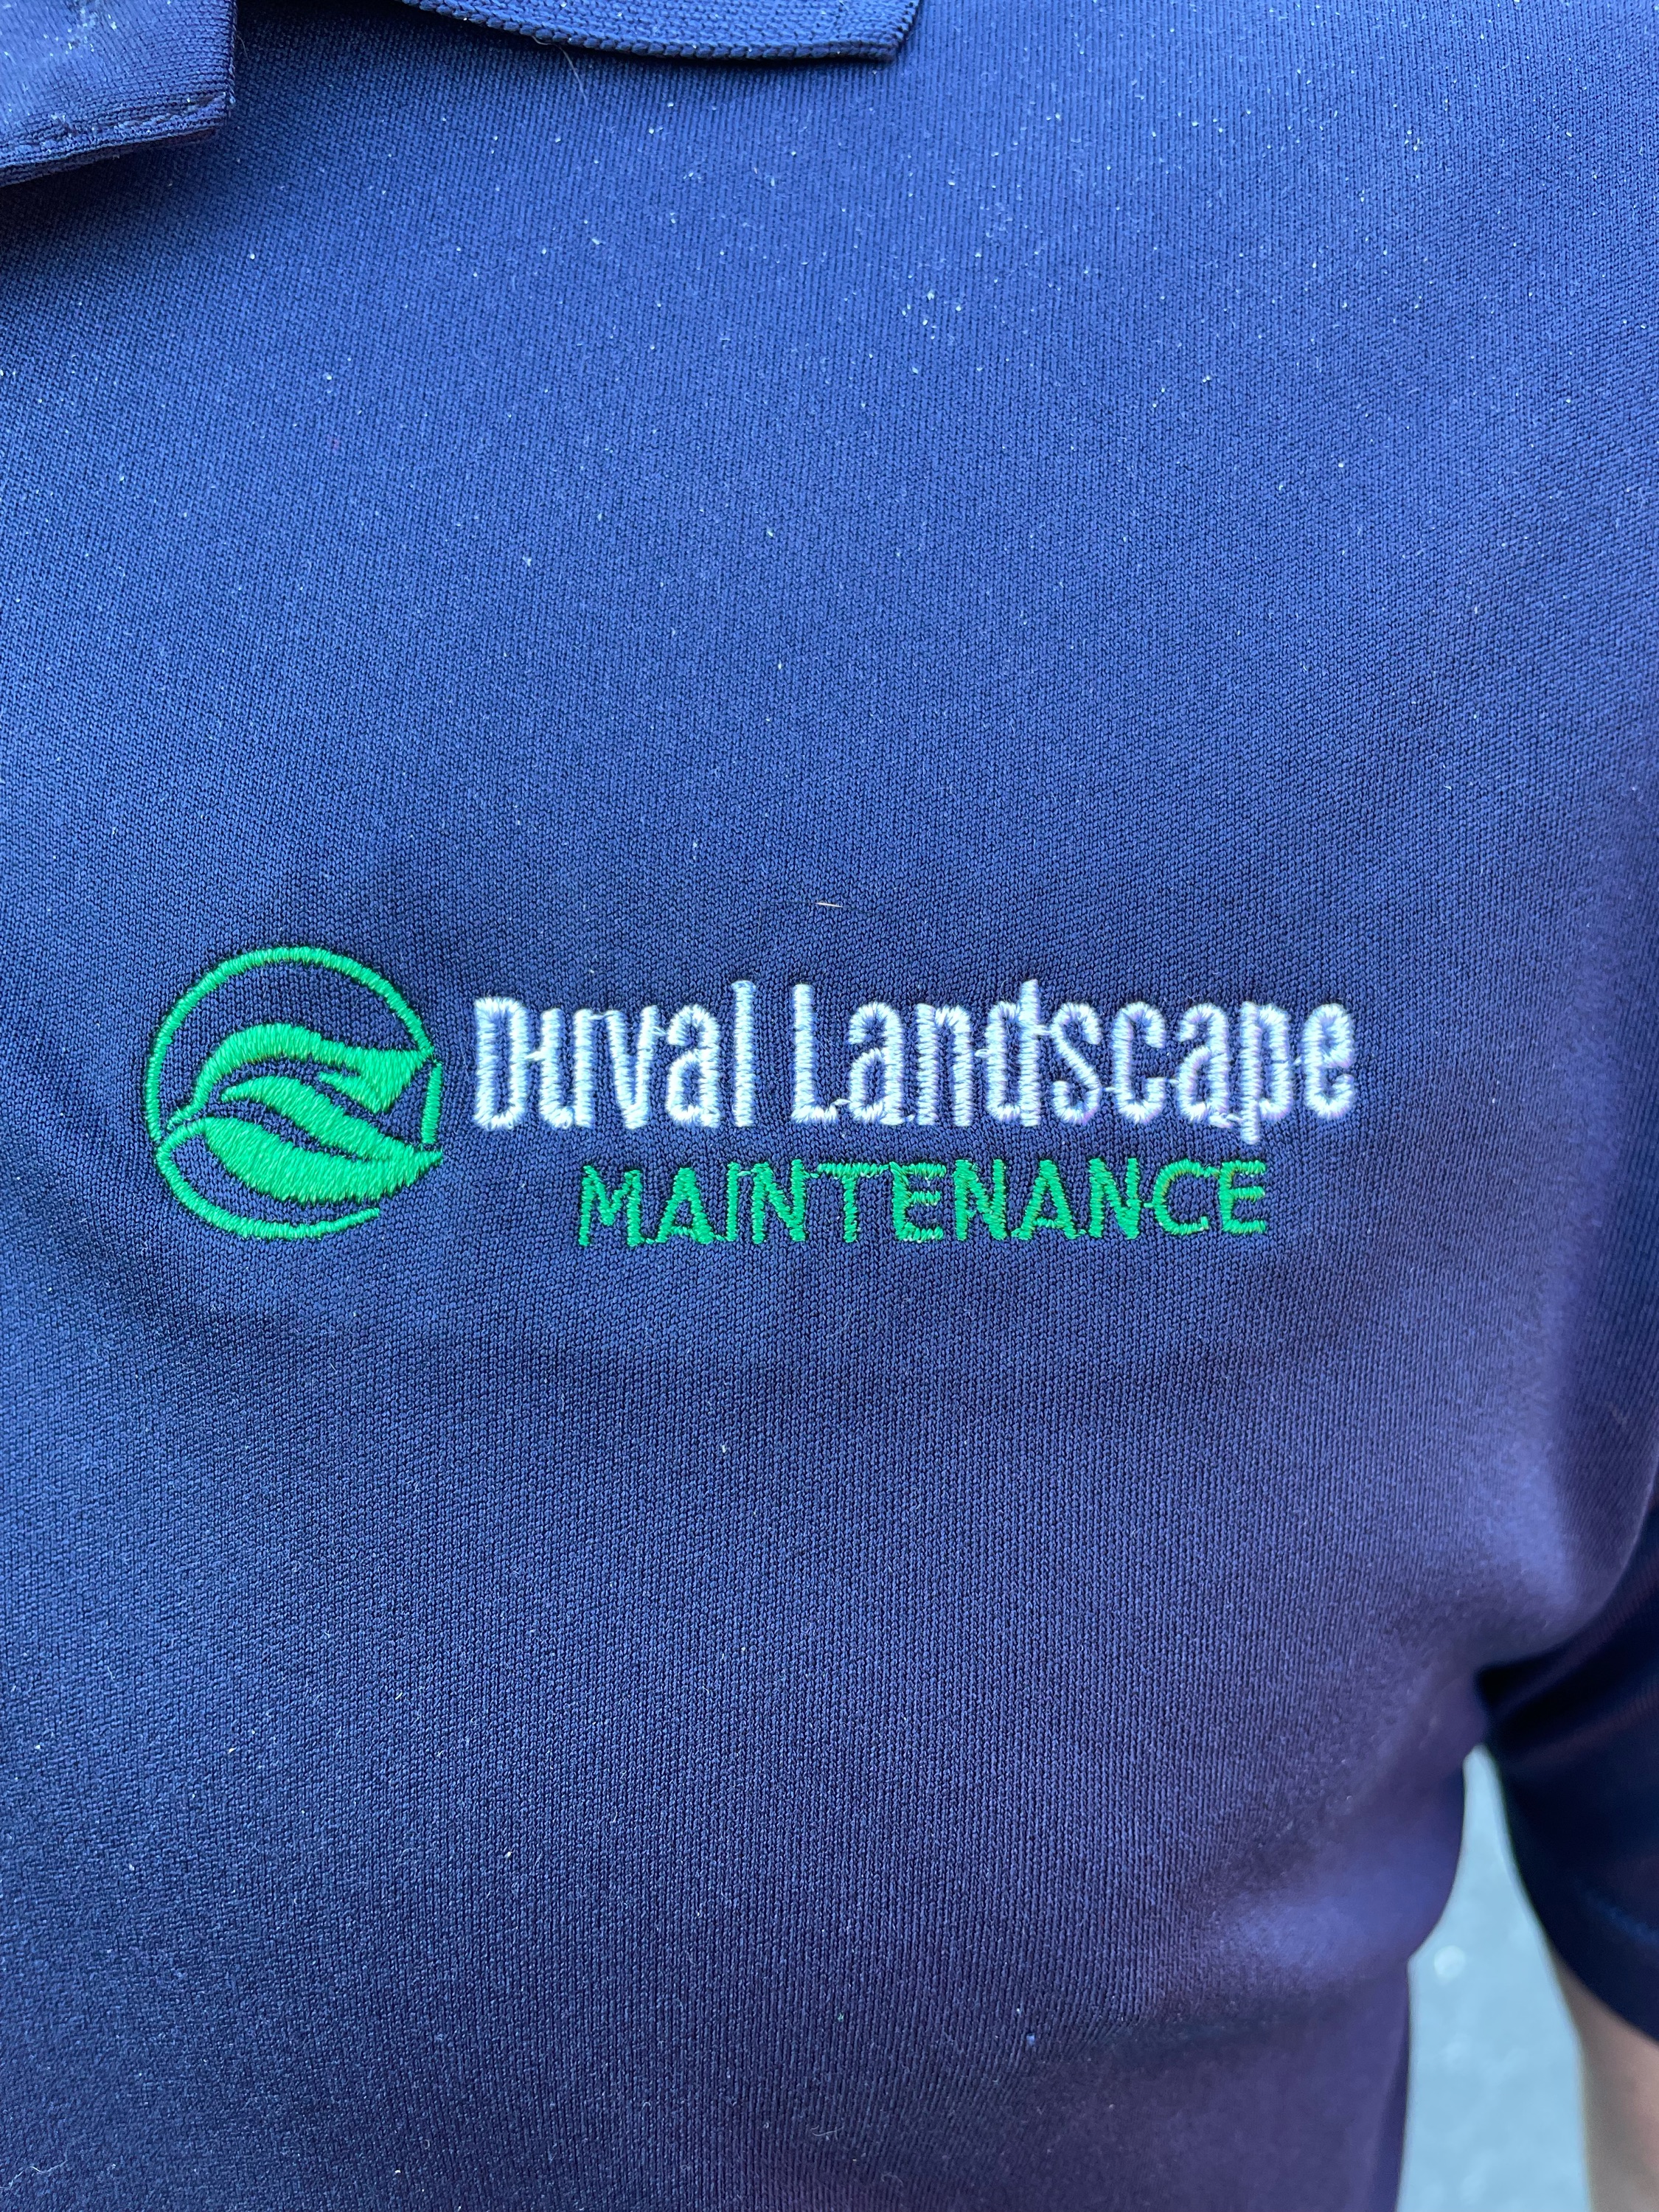 Duval Landscape Maintenance Logo